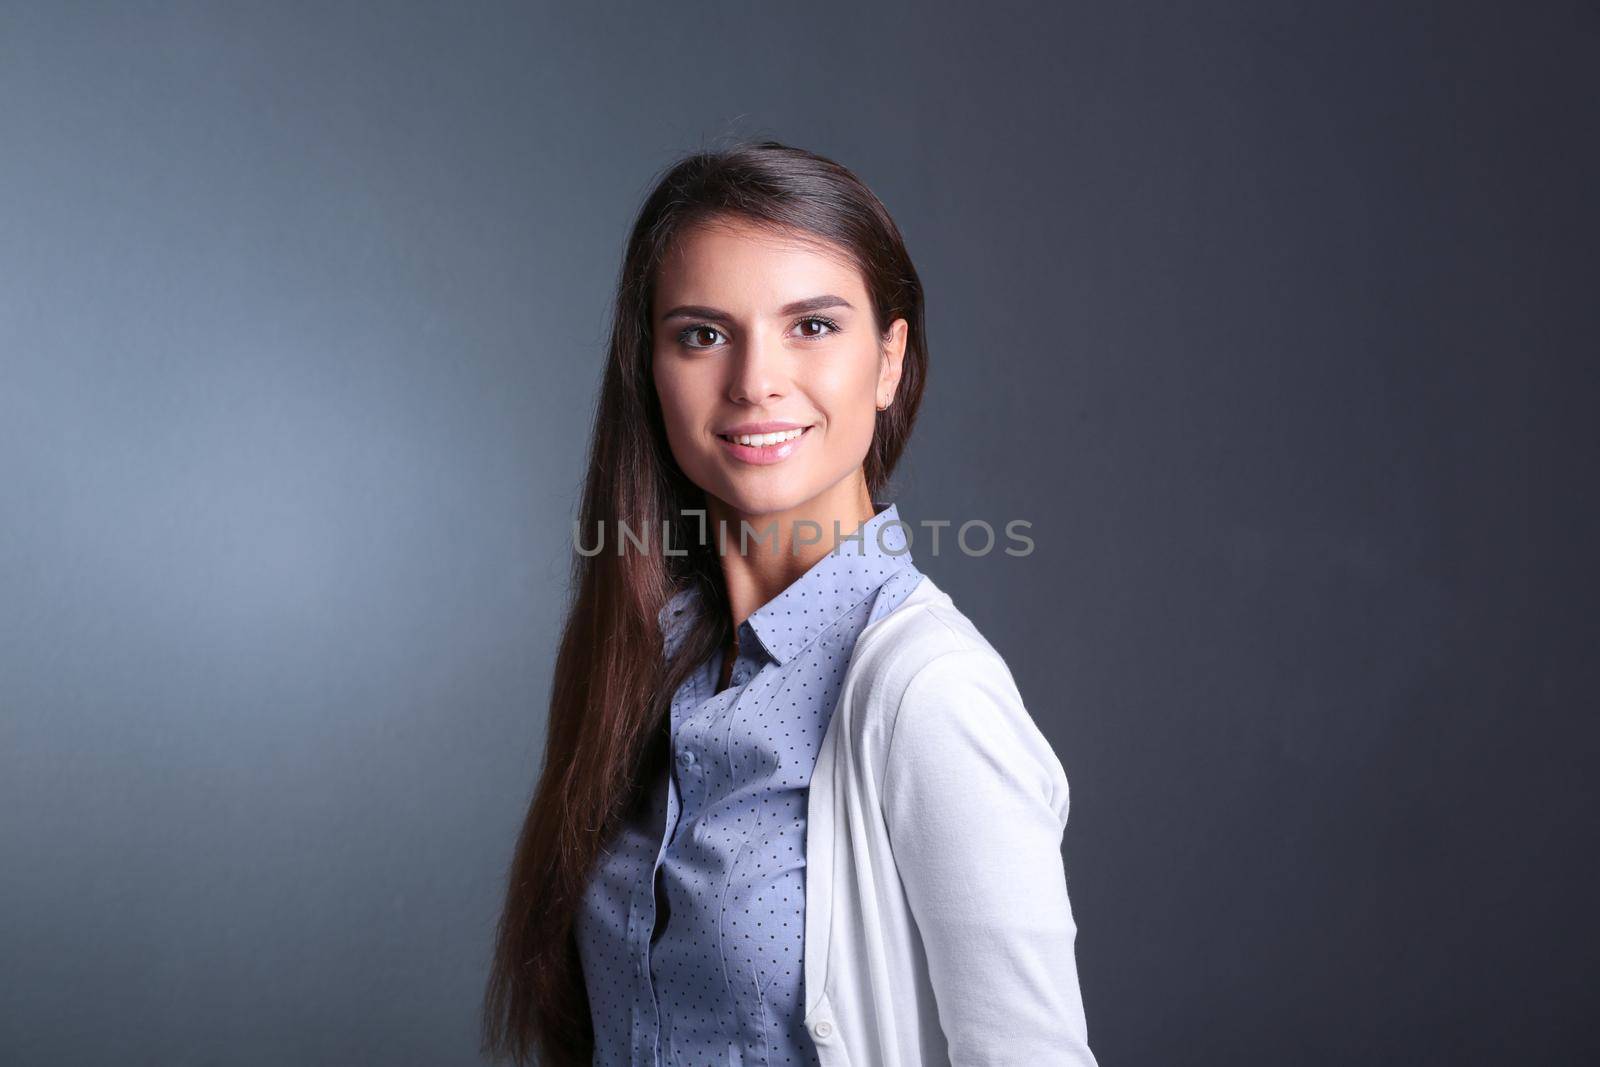 Portrait of a businesswoman , against dark background. Woman smiling. Portrait of a woman by lenetstan